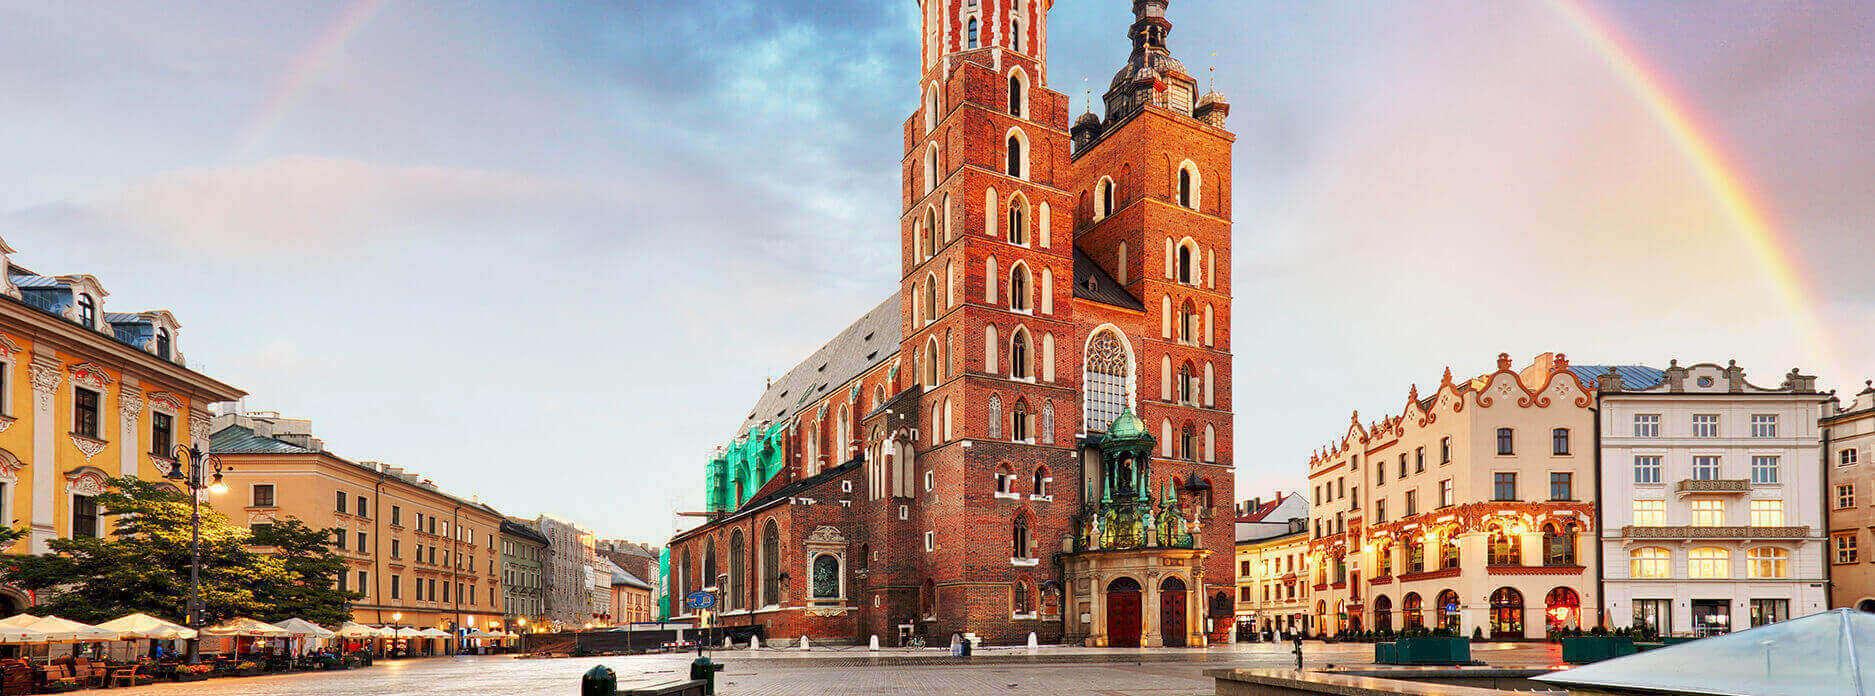 Test SANCO Kraków - gdzie wykonać w Krakowie?